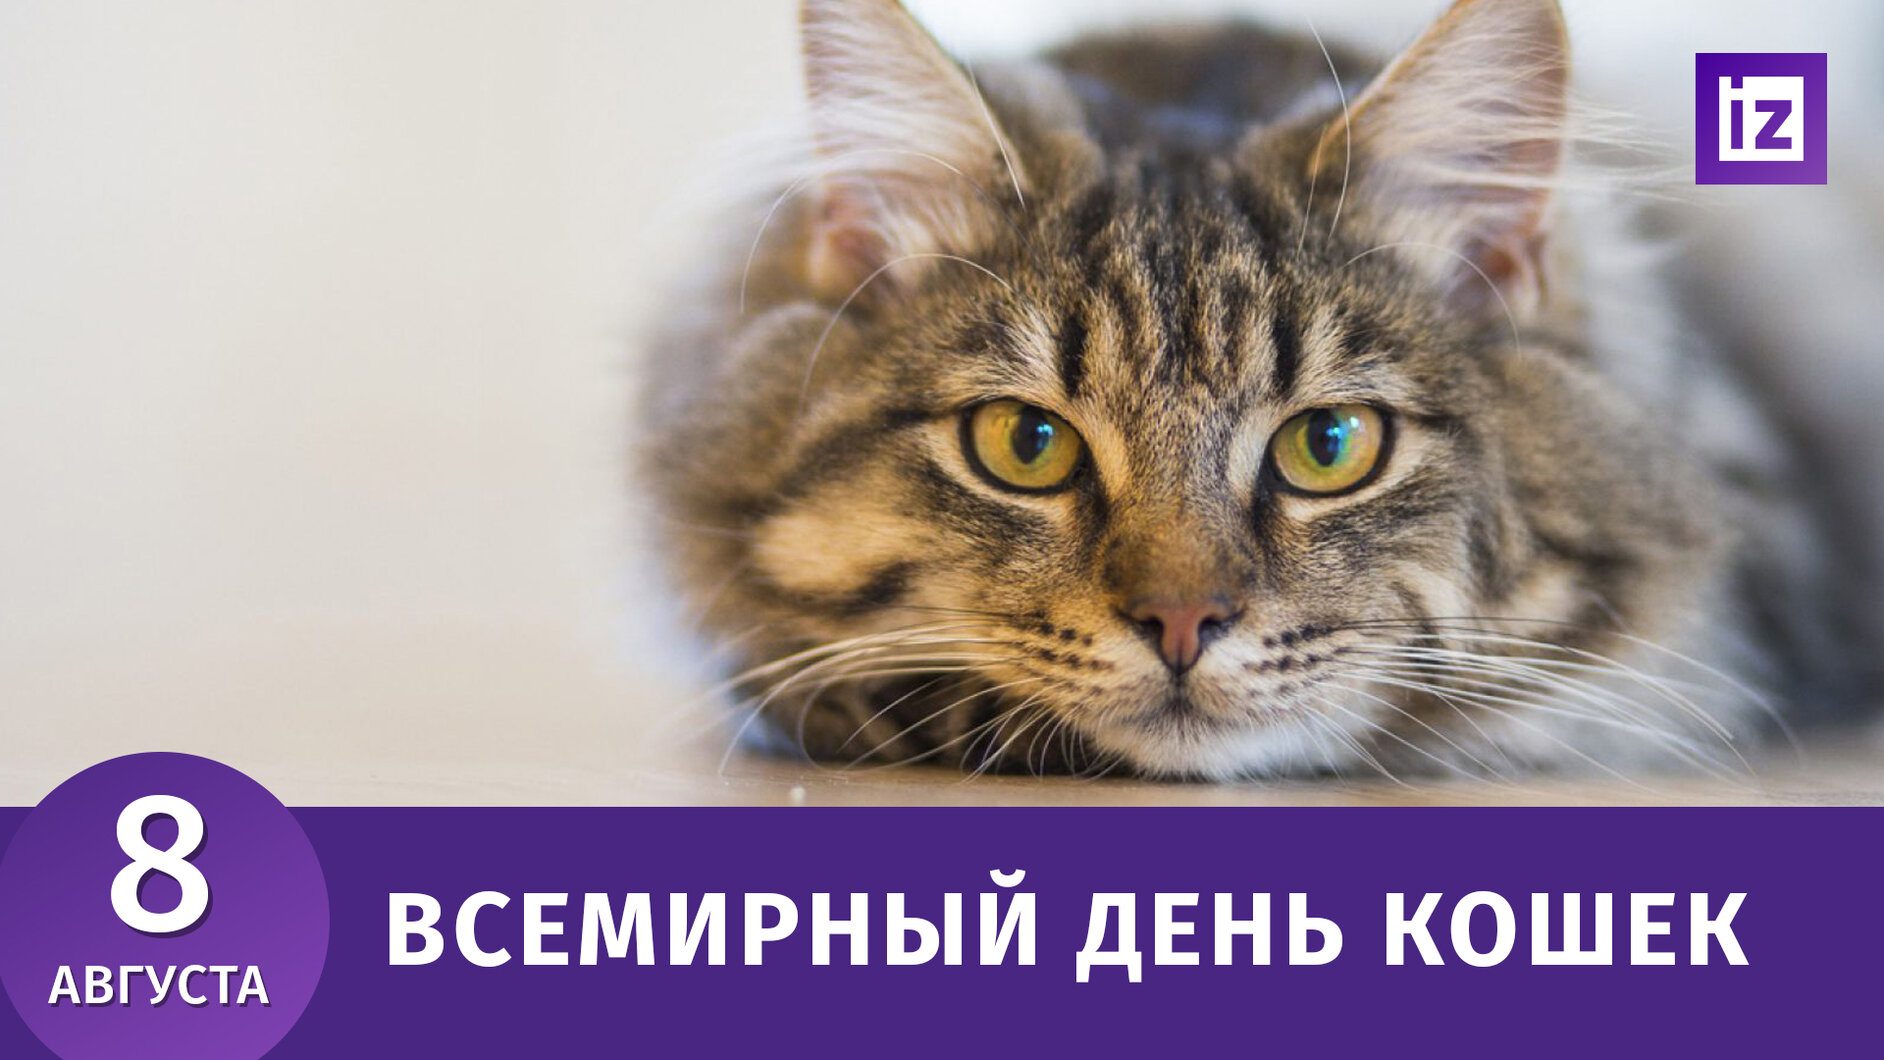 Всемирный день котов и кошек: всё о празднике